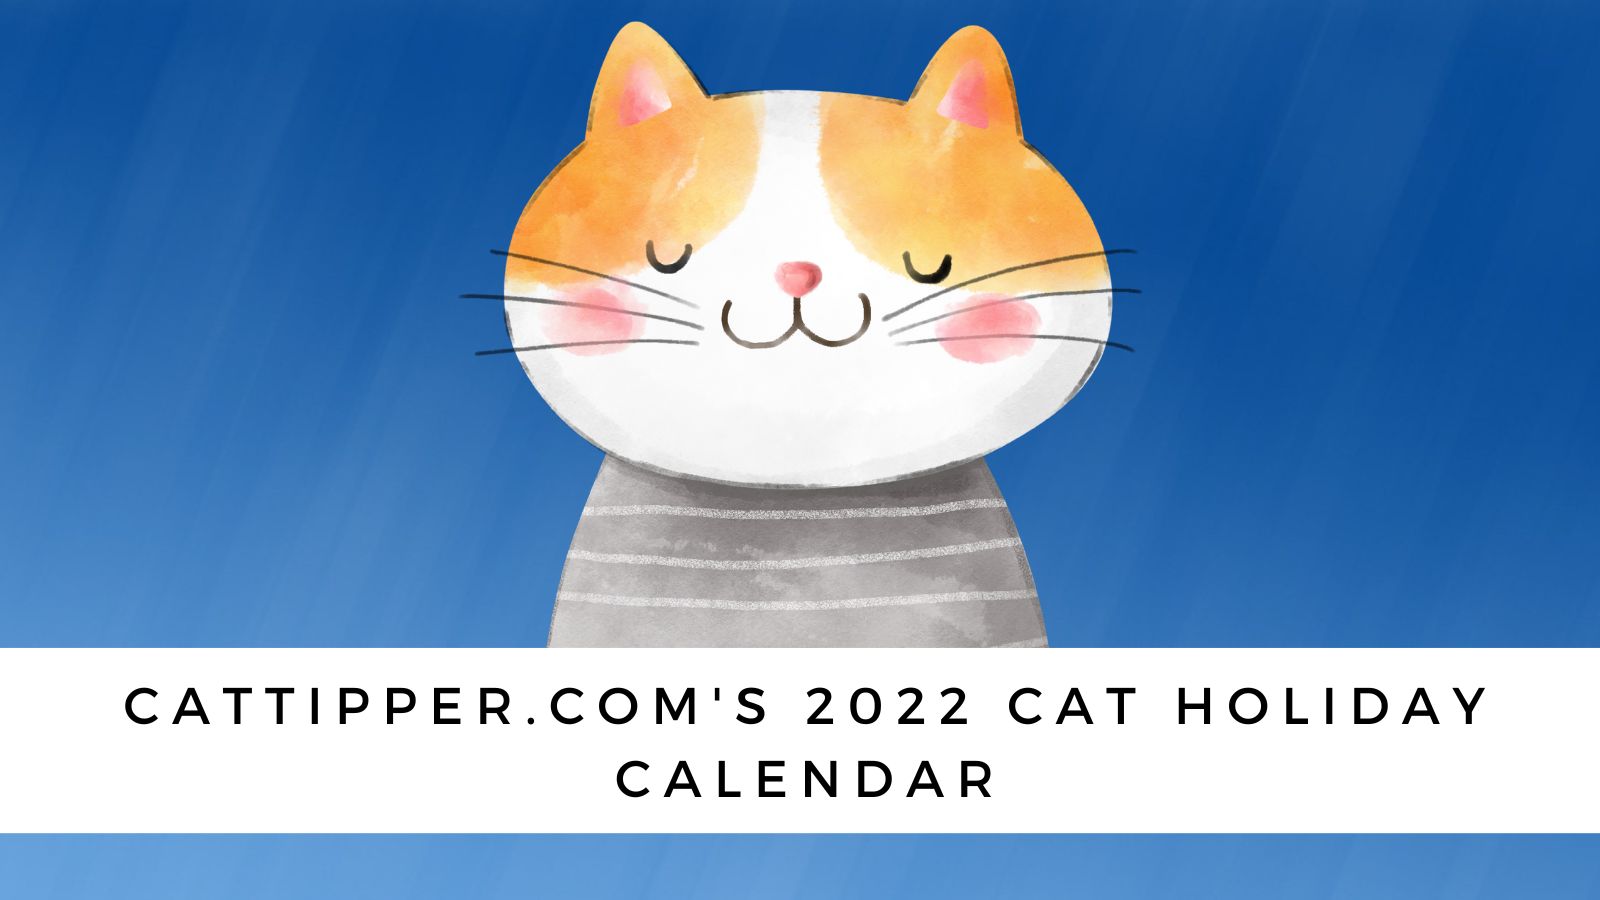 www.cattipper.com